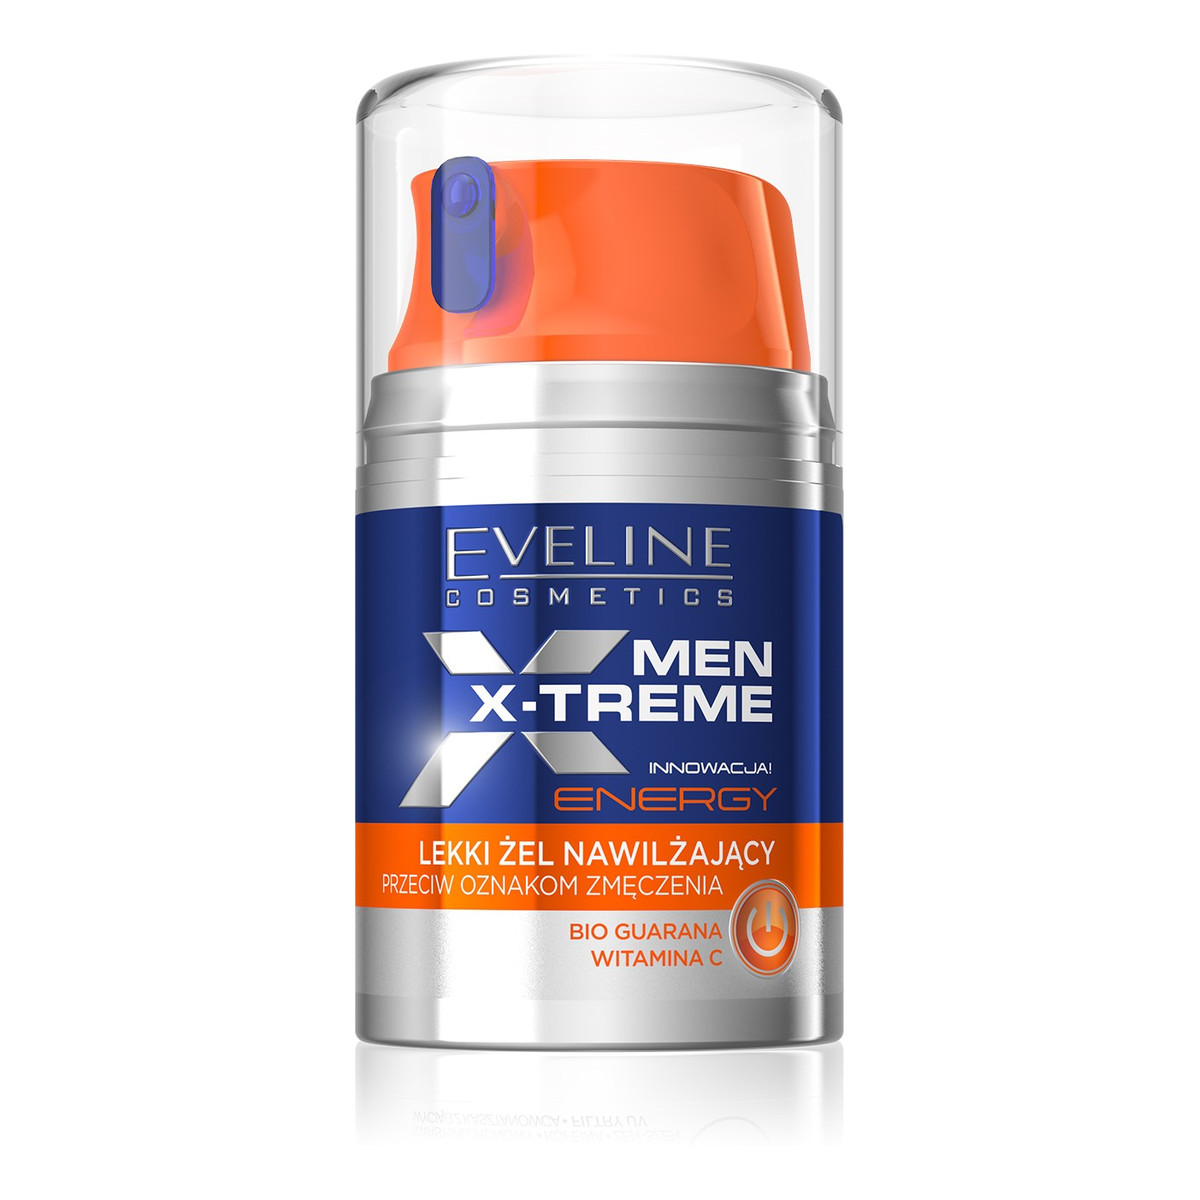 Eveline Men X-Treme Energy Lekki Żel nawilżający przeciw oznakom zmęczenia 50ml